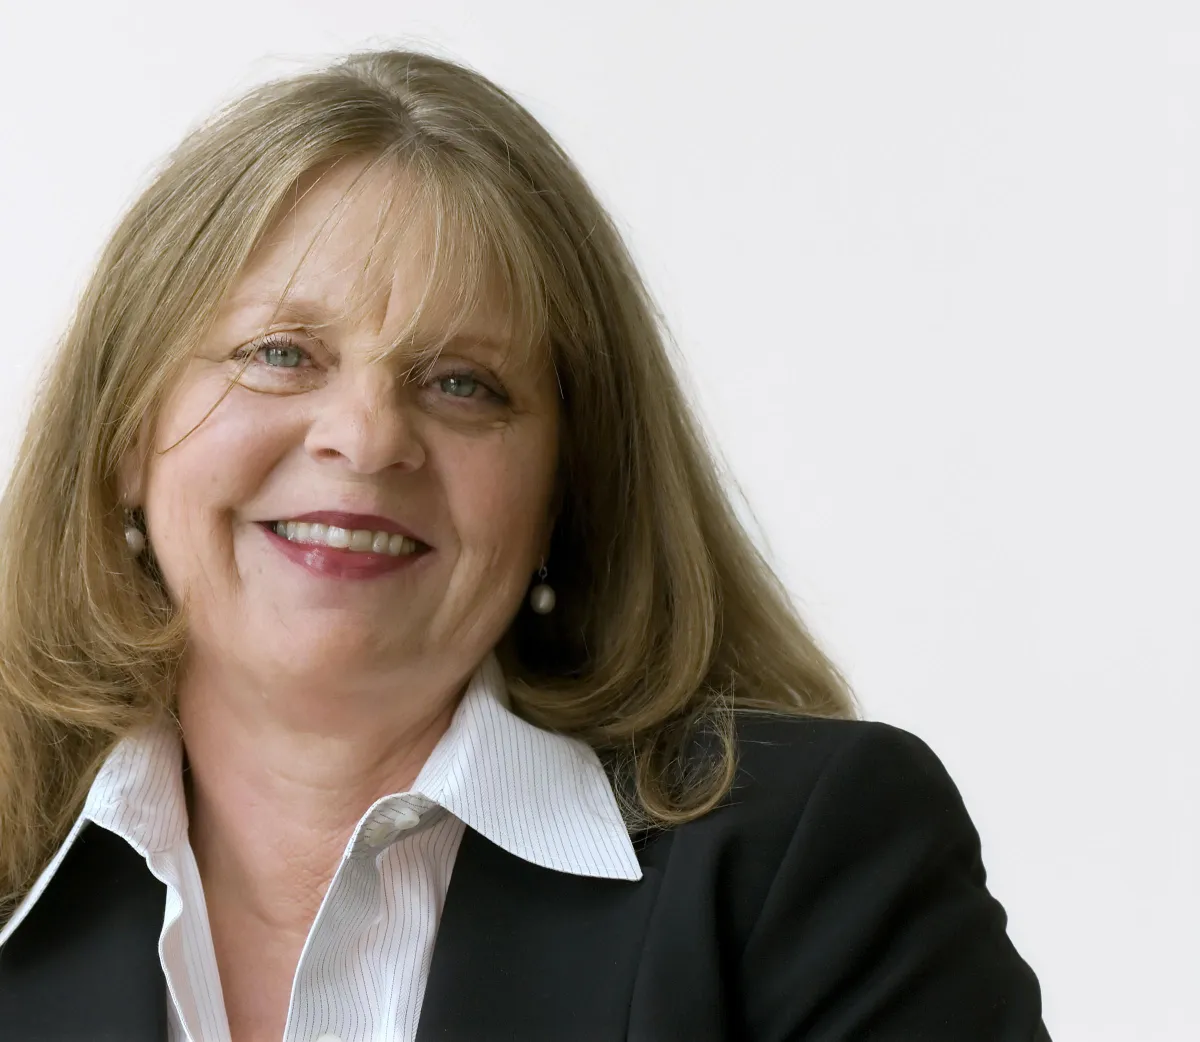  Ontario Business Leader Spotlight Host, Susan Burns